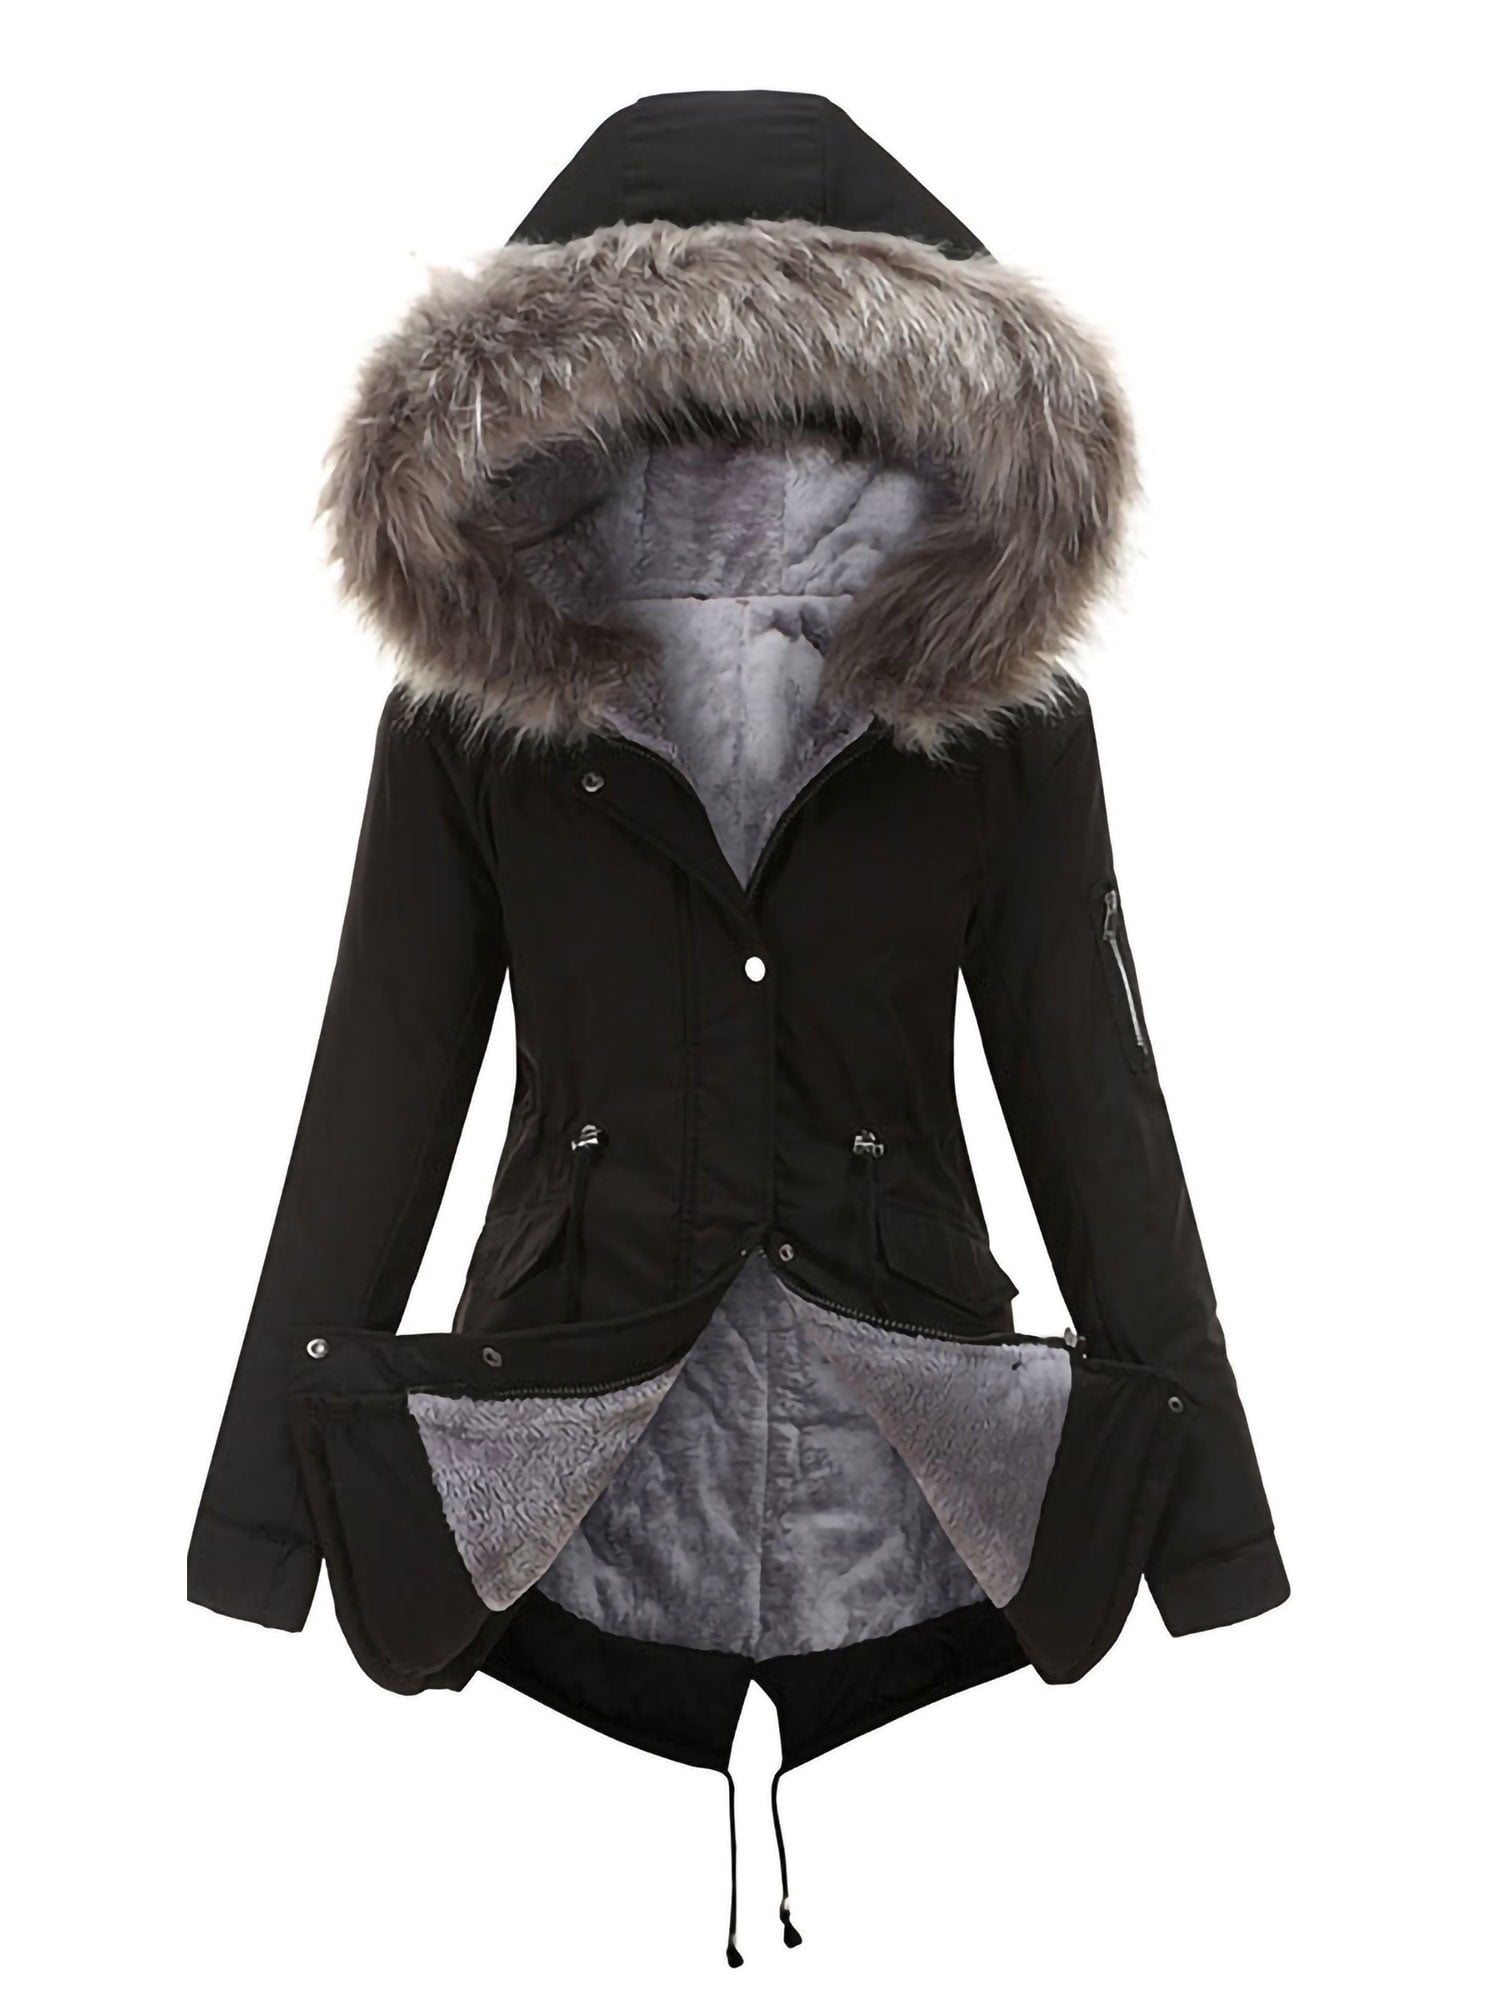 Femme fausse fourrure pour femme veste à capuche hiver chaud manteau de poche neuf tailles 8-16 